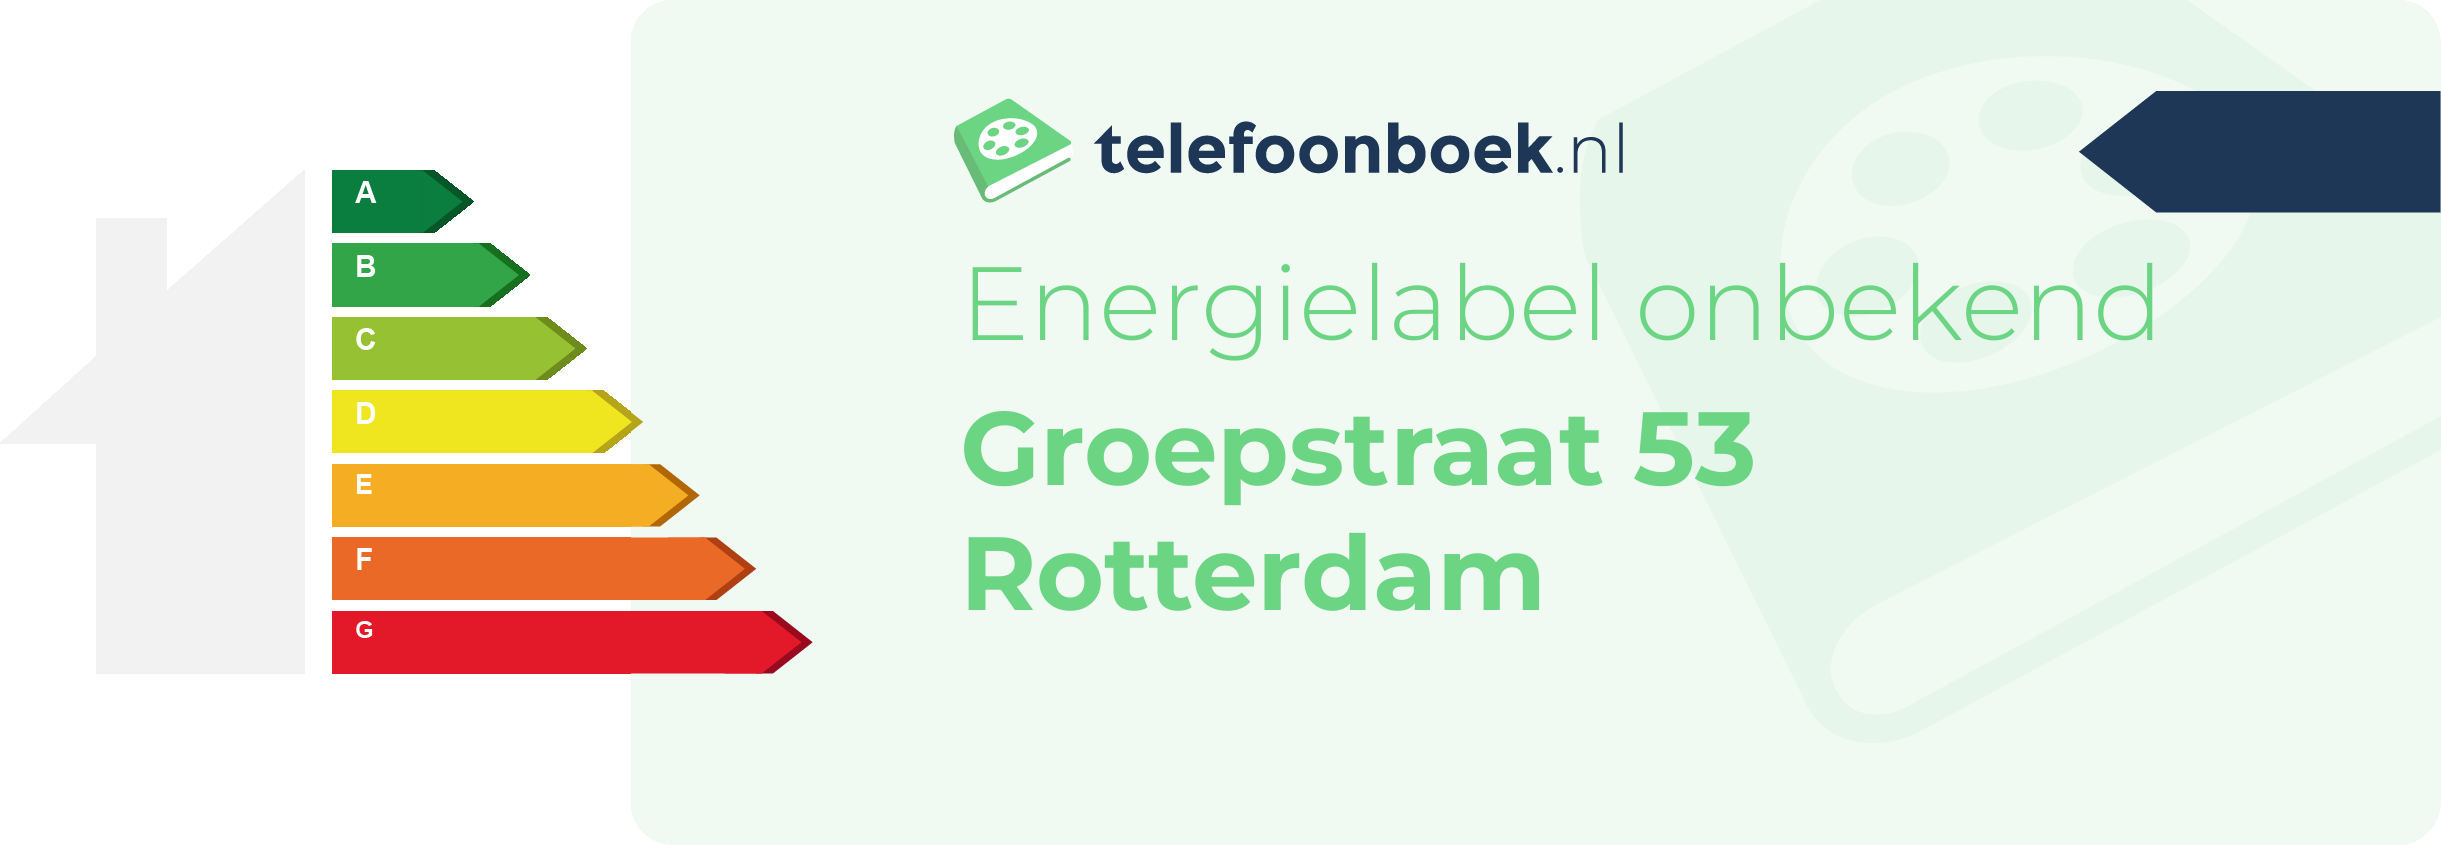 Energielabel Groepstraat 53 Rotterdam